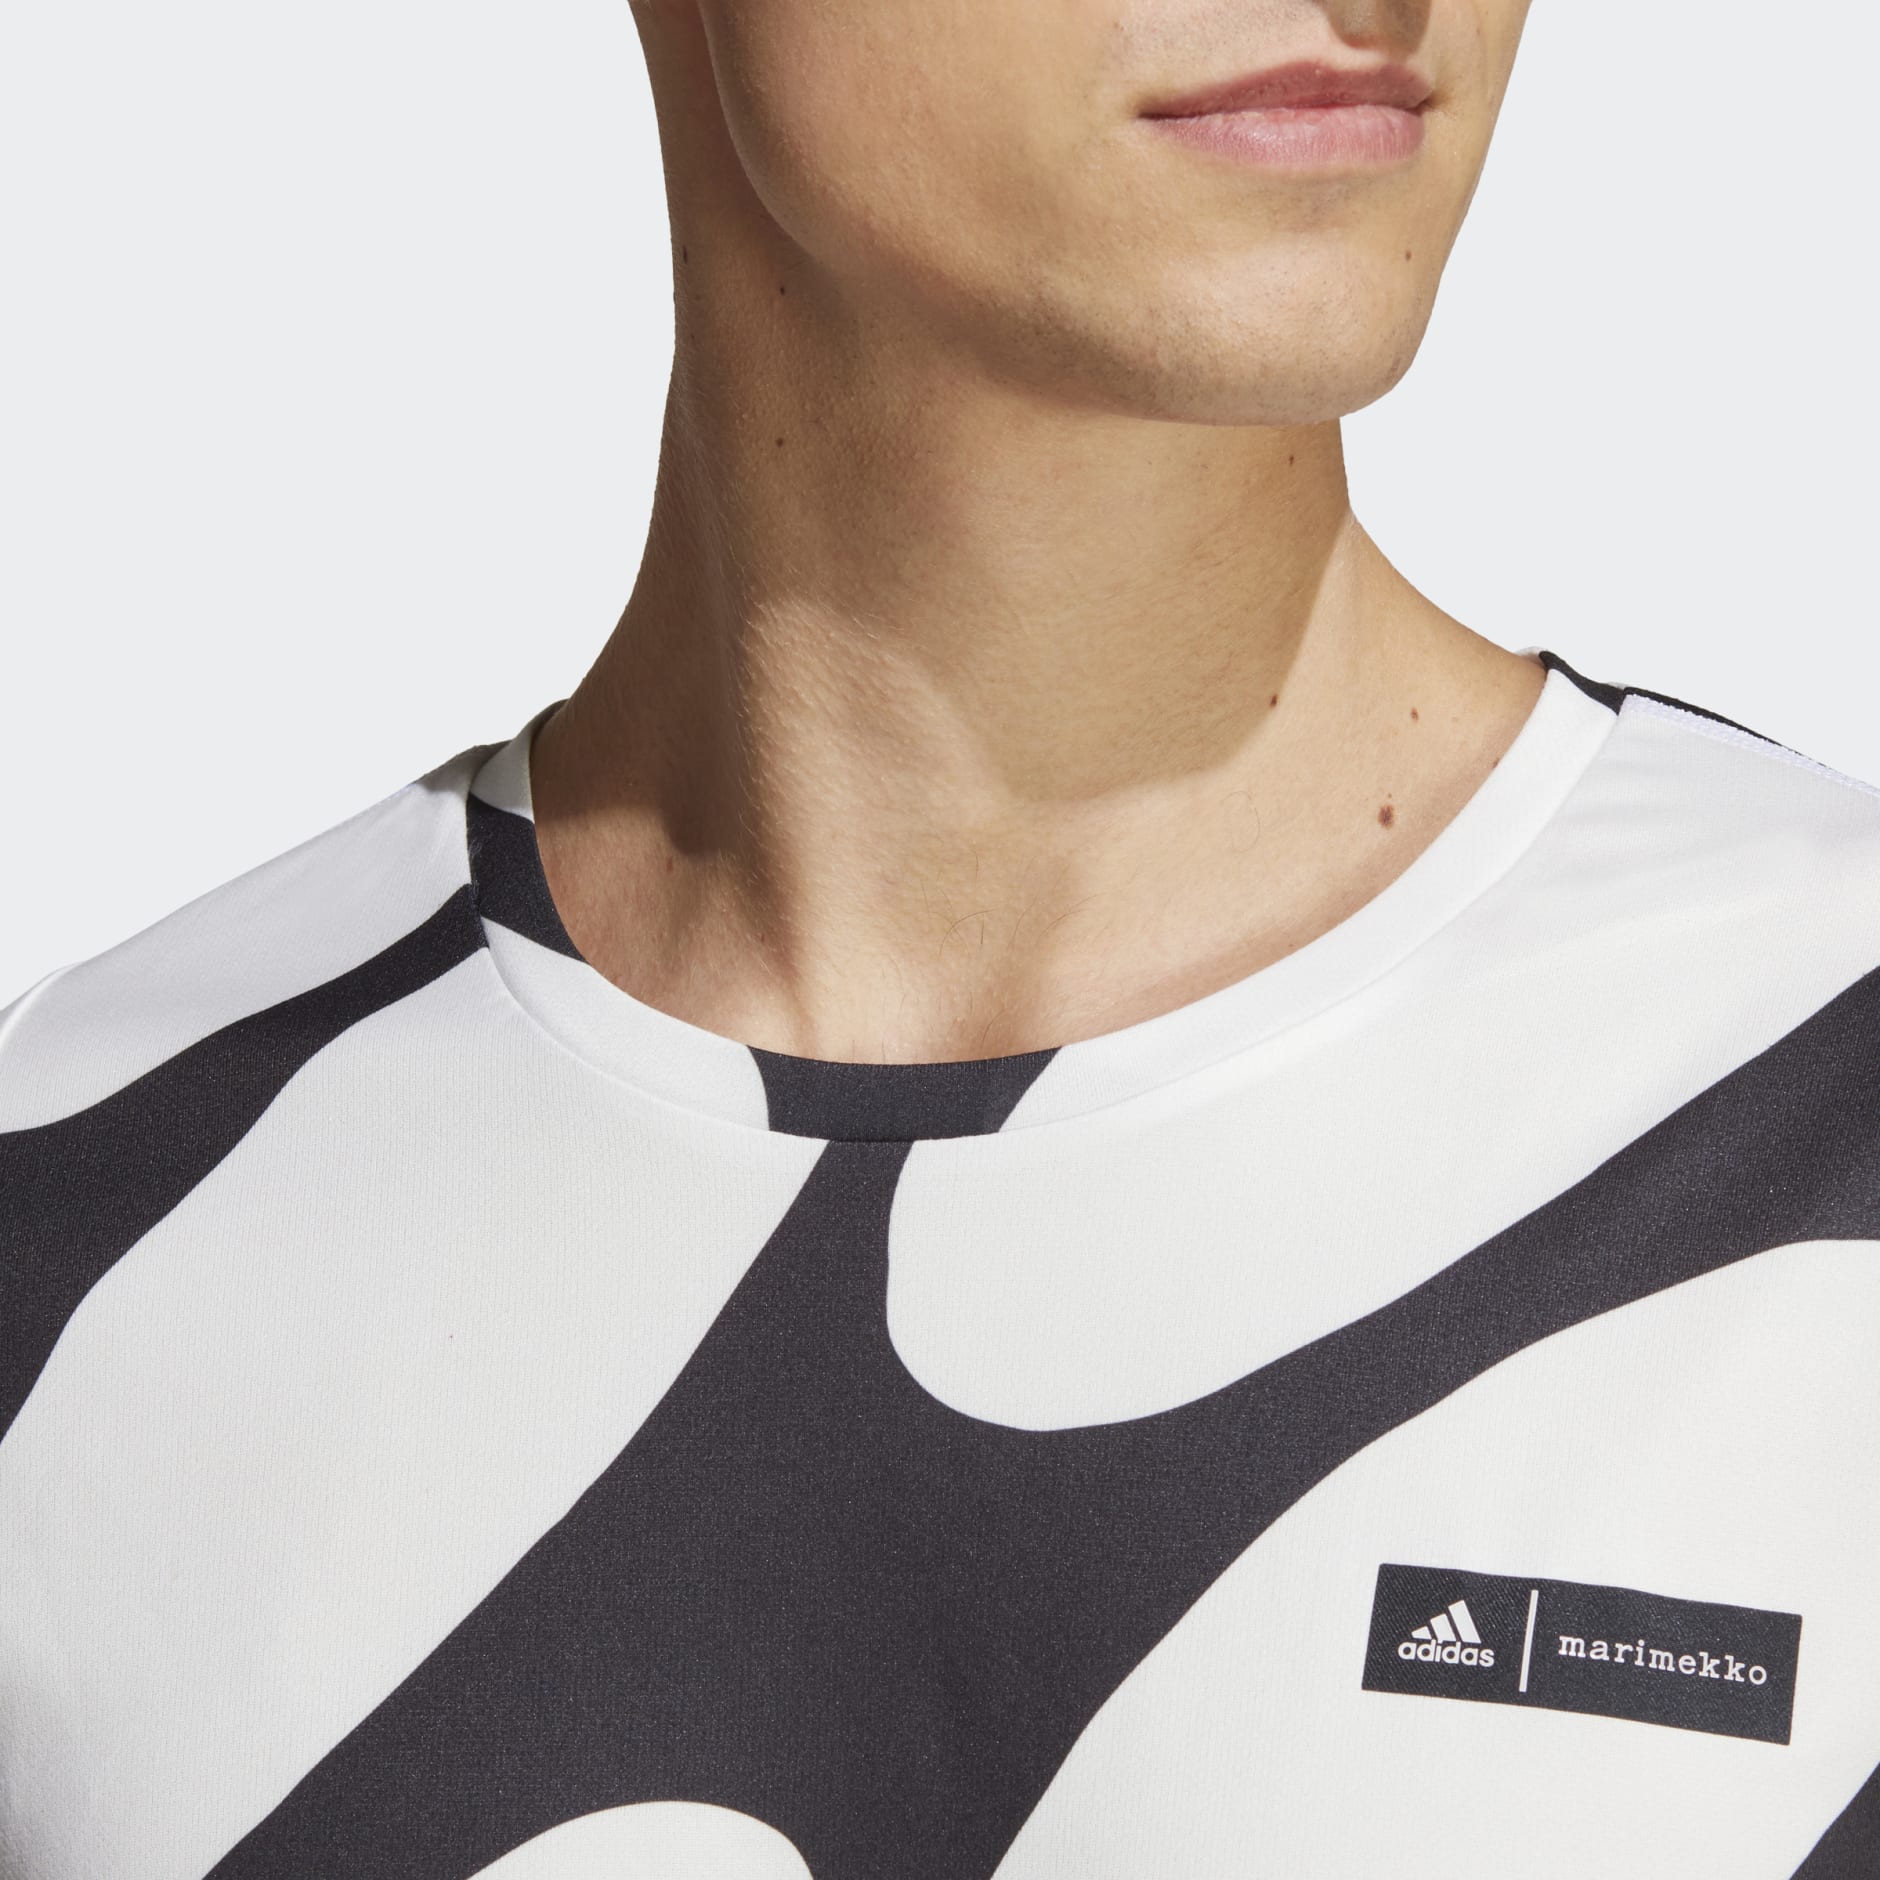 cerca Saturar Distribución Men's Clothing - adidas x Marimekko Run Icons 3-Stripes Tee - White | adidas  Saudi Arabia